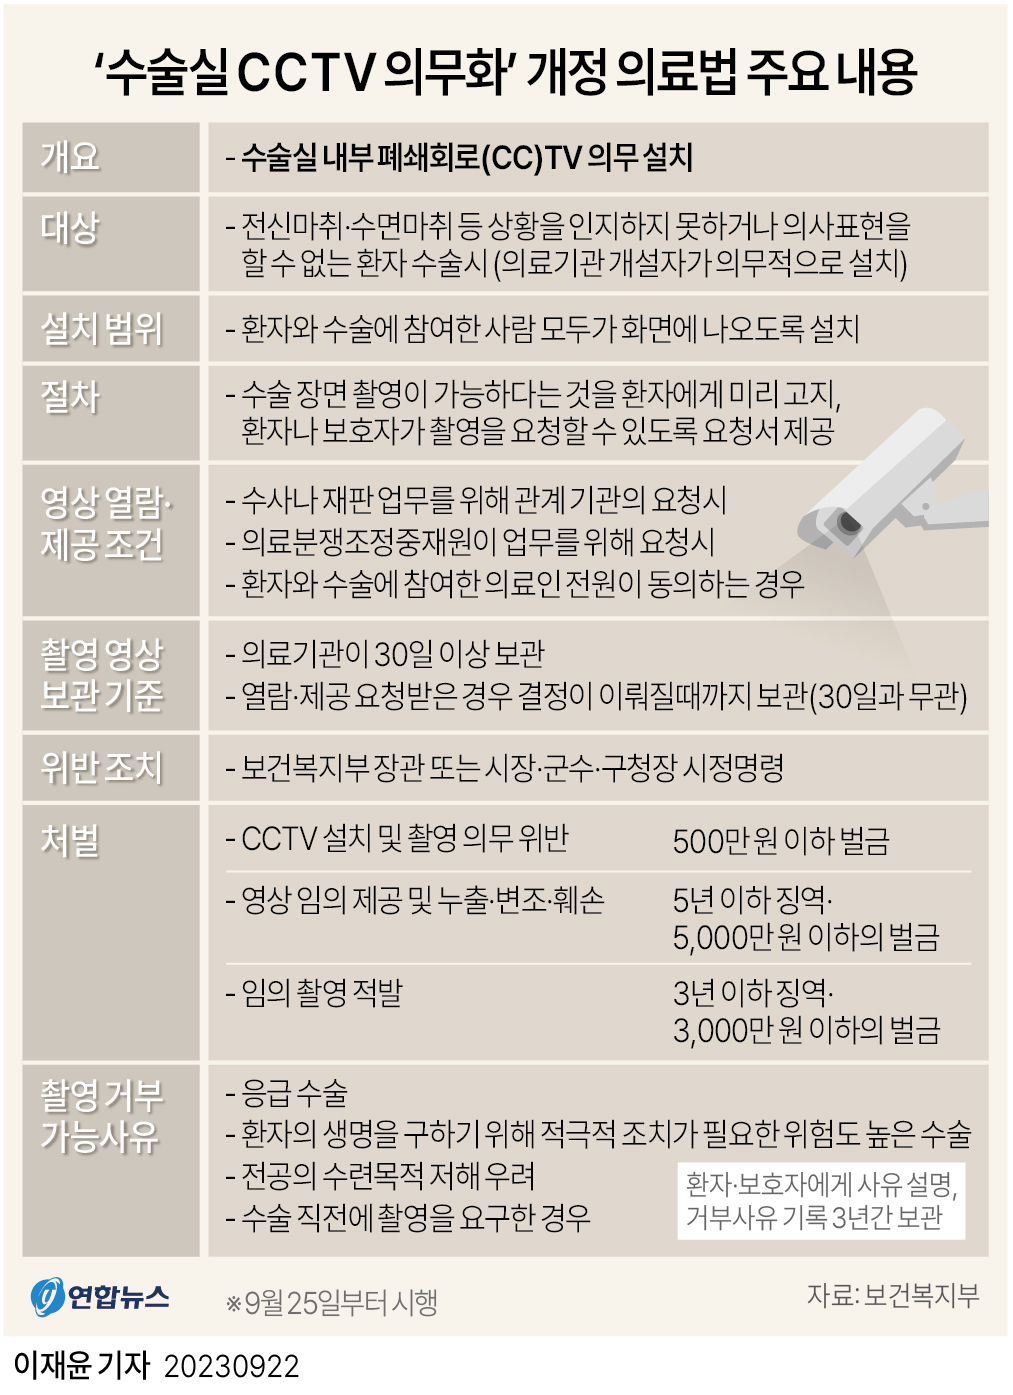 [그래픽] '수술실 CCTV 의무화' 개정 의료법 주요 내용